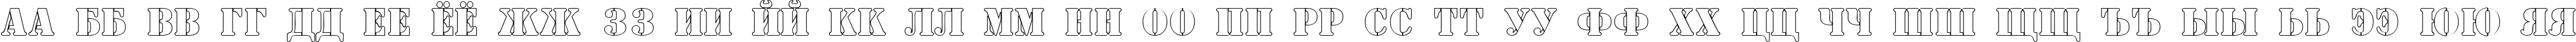 Пример написания русского алфавита шрифтом a_SamperOtl